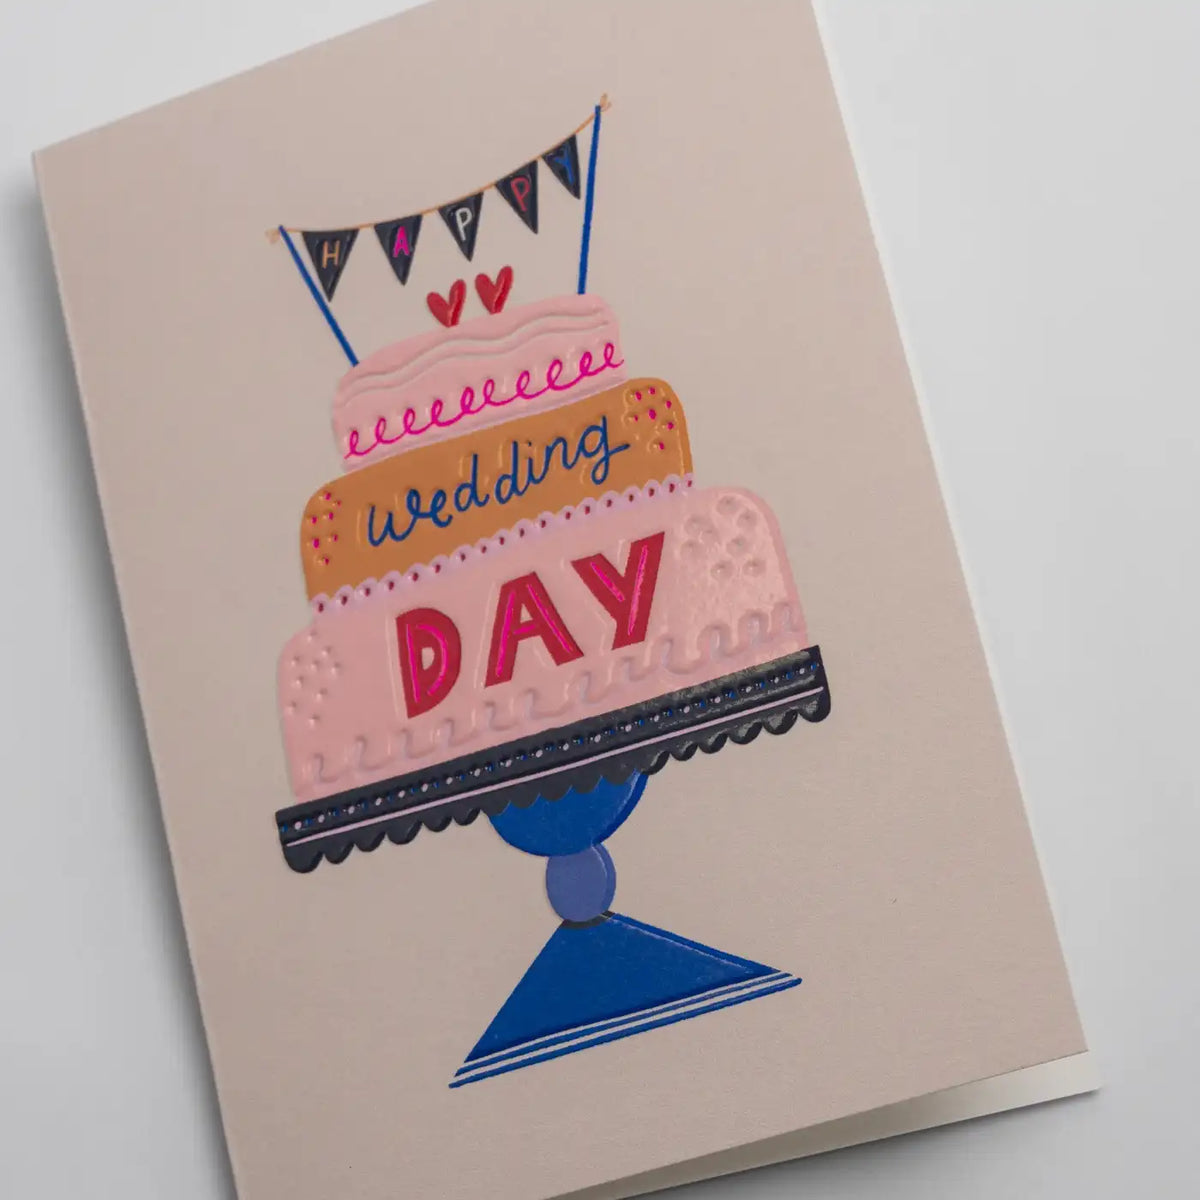 Klappkarte / Jessica Smith / Happy Wedding Day Decorative Cake Greeting Card